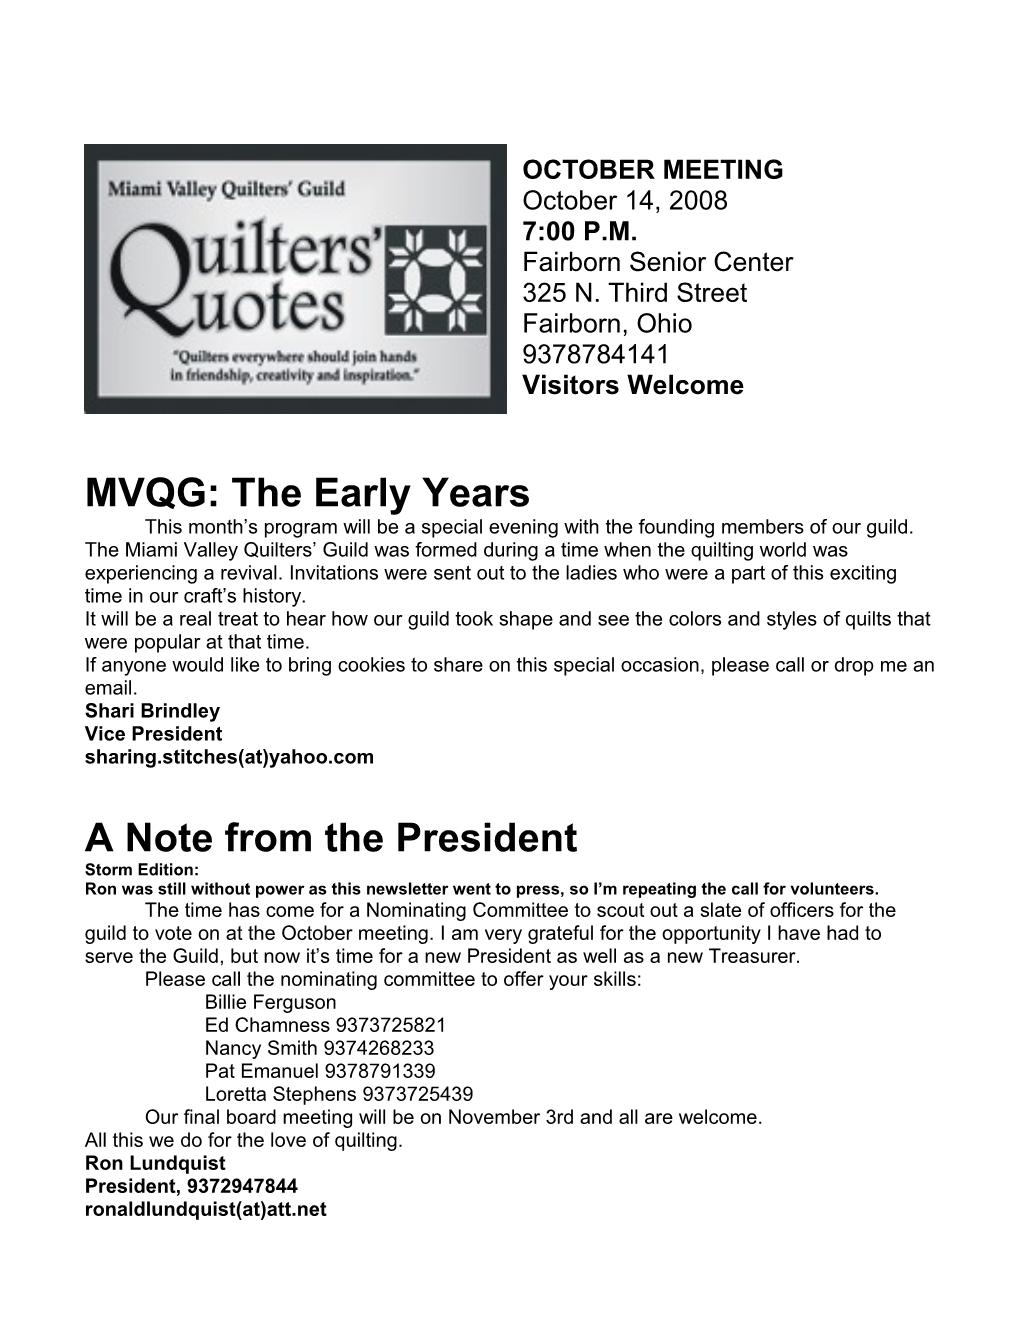 MVQG: the Early Years